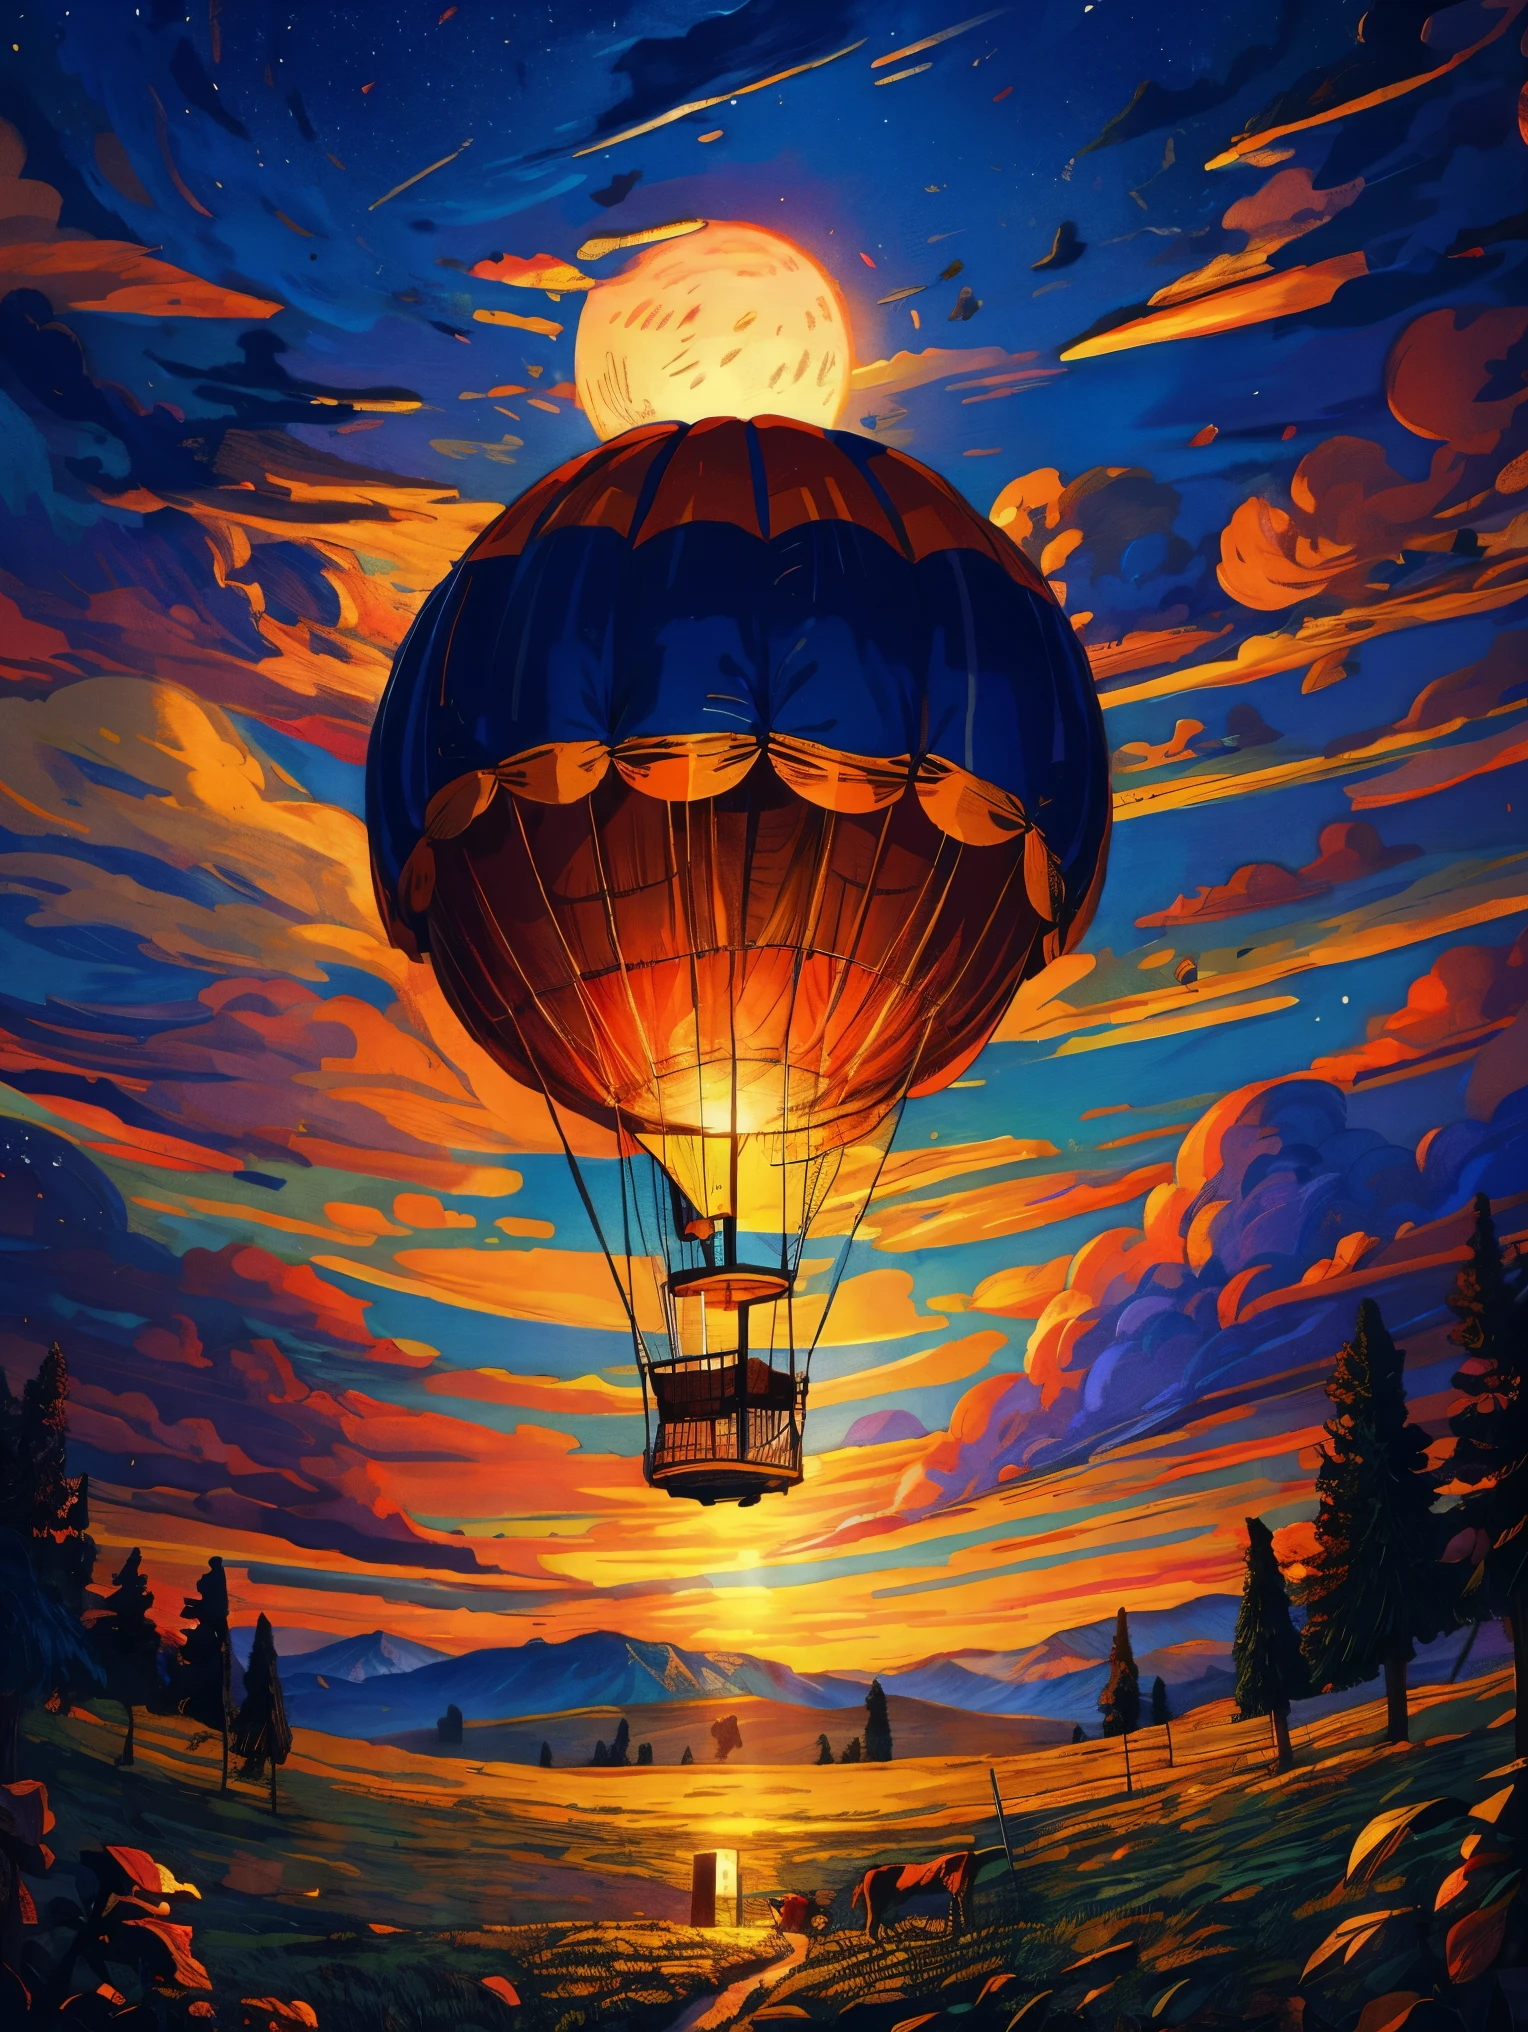 (Эпический рисунок на бумаге) из (большой) воздушный шар, Романтические волшебные потоки, звездная лунная ночь, Готический замок, горы